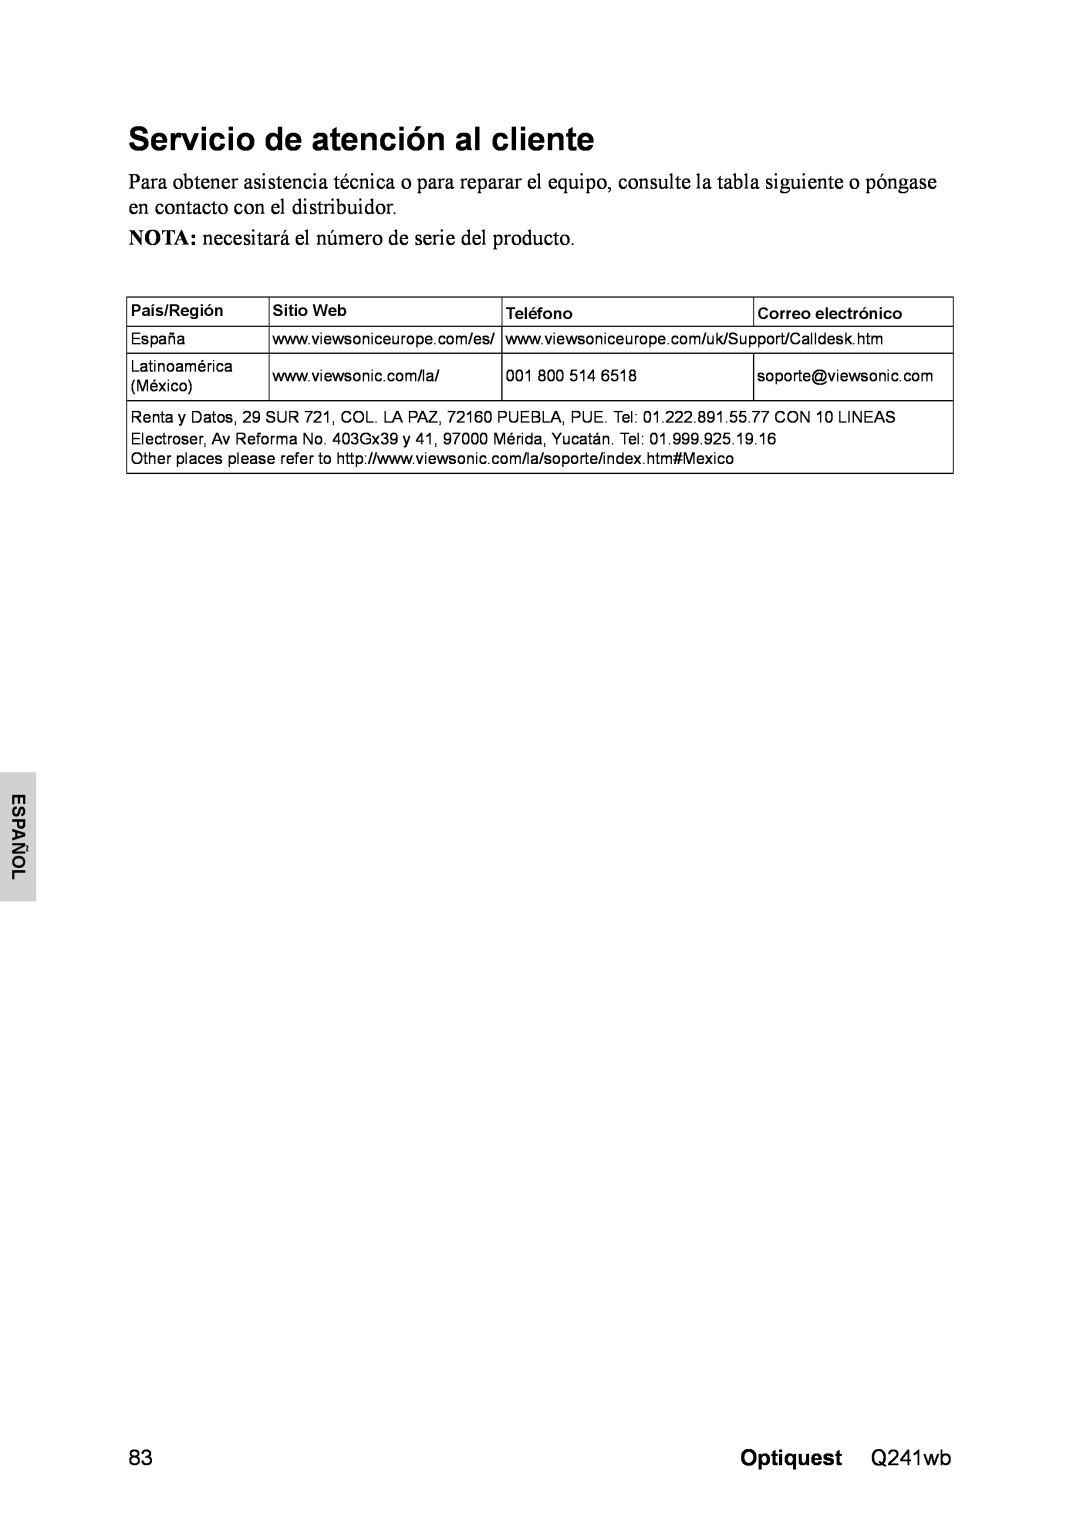 Optiquest VS12108 manual Servicio de atención al cliente, NOTA necesitará el número de serie del producto, Español 